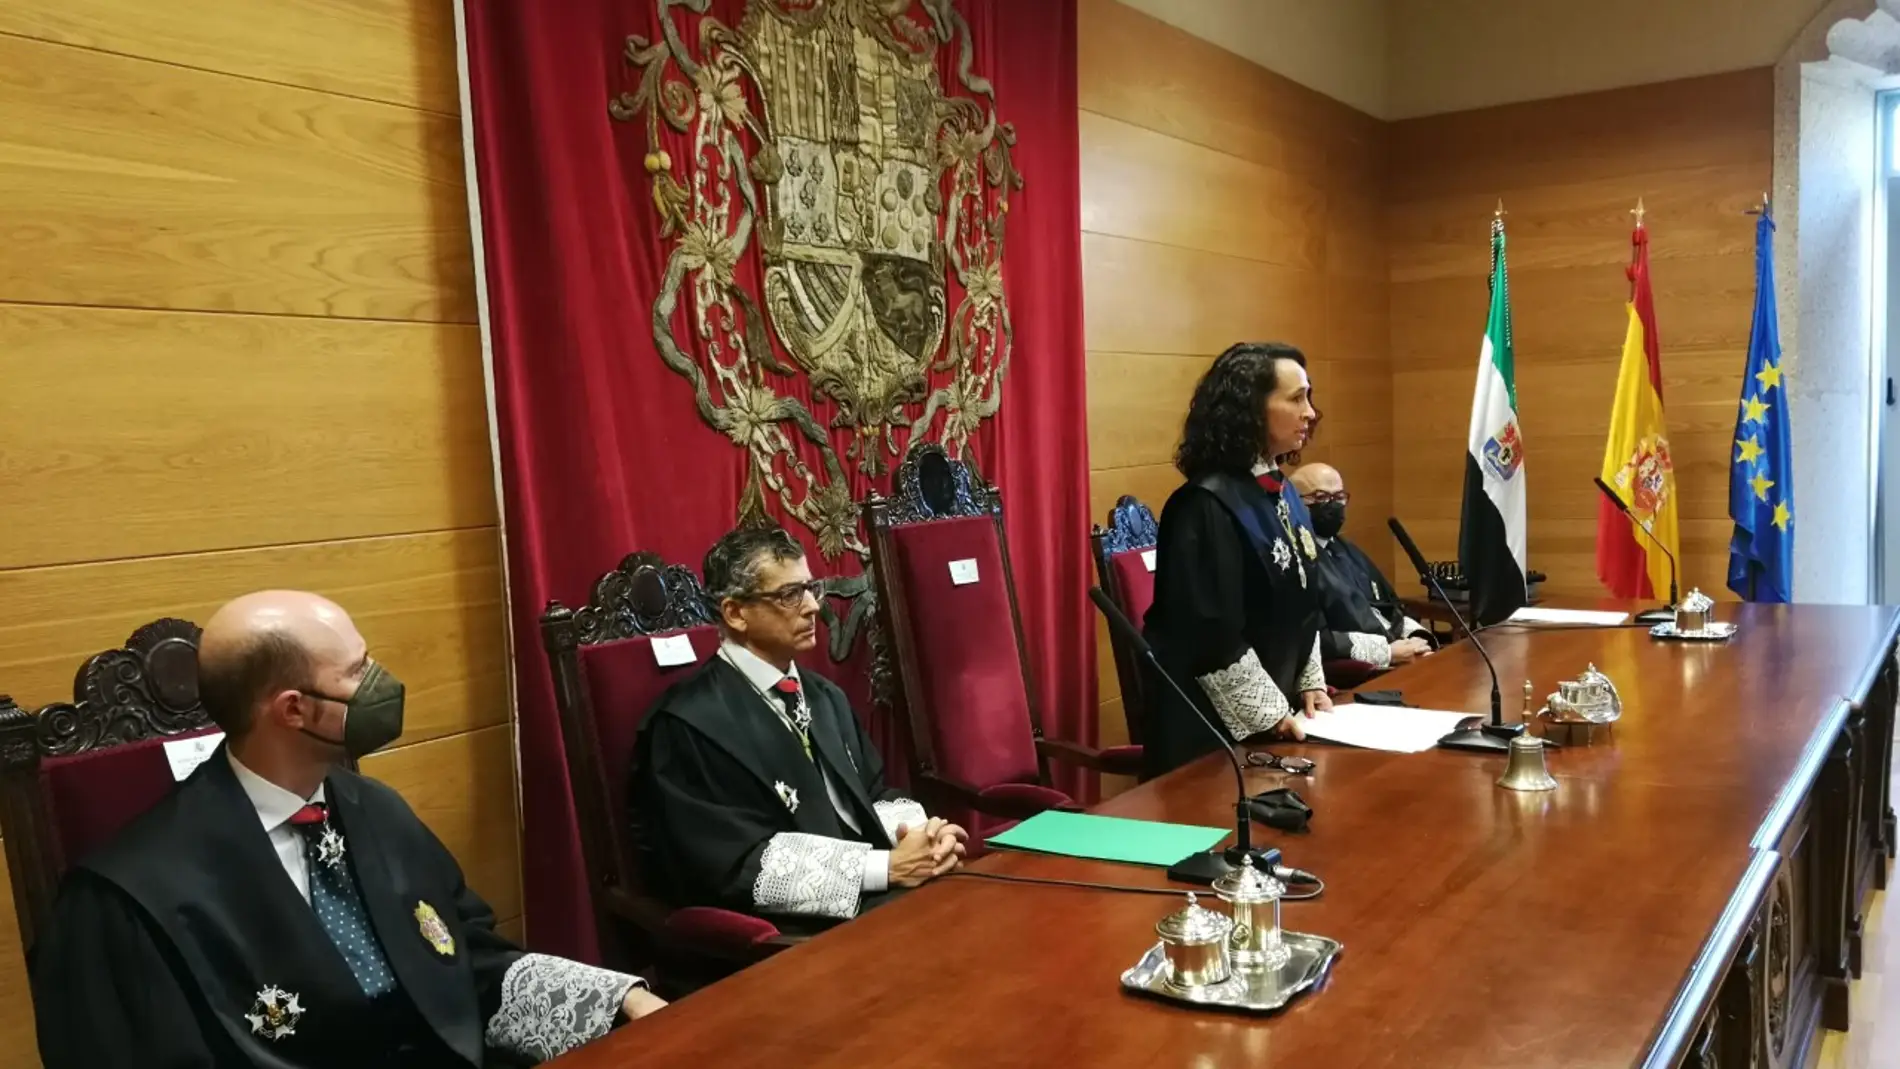 La presidenta del TSJEX anuncia que este miércoles se reúne la comisión mixta para organizar el traslado a la nueva Ciudad de Justicia de Badajoz